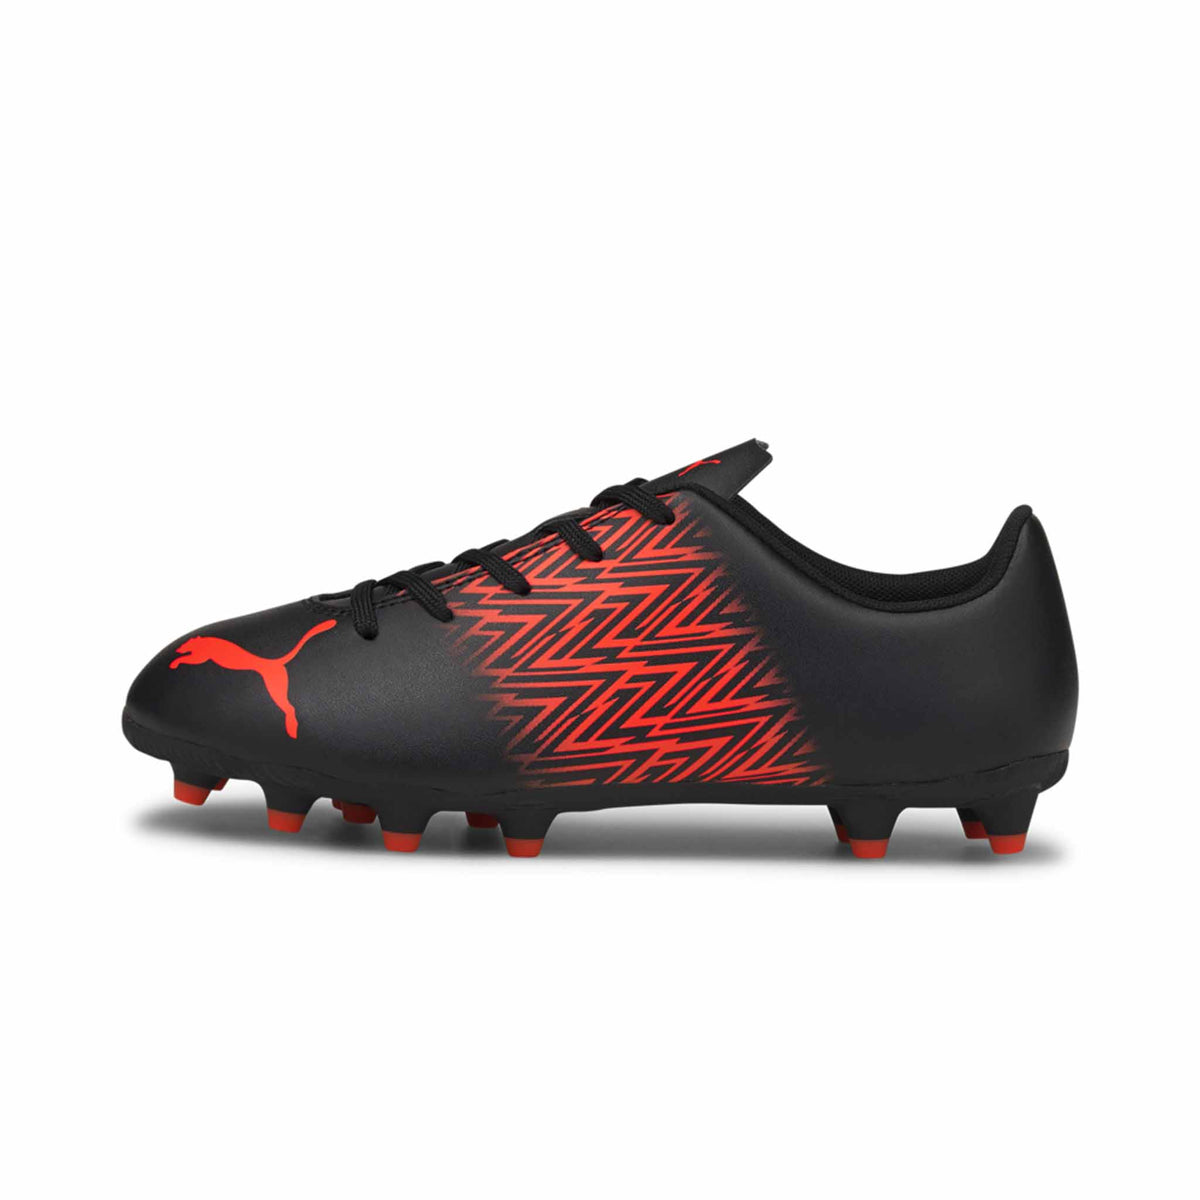 Puma Tacto FG/AG Junior chaussures de soccer enfant Noir / Rouge